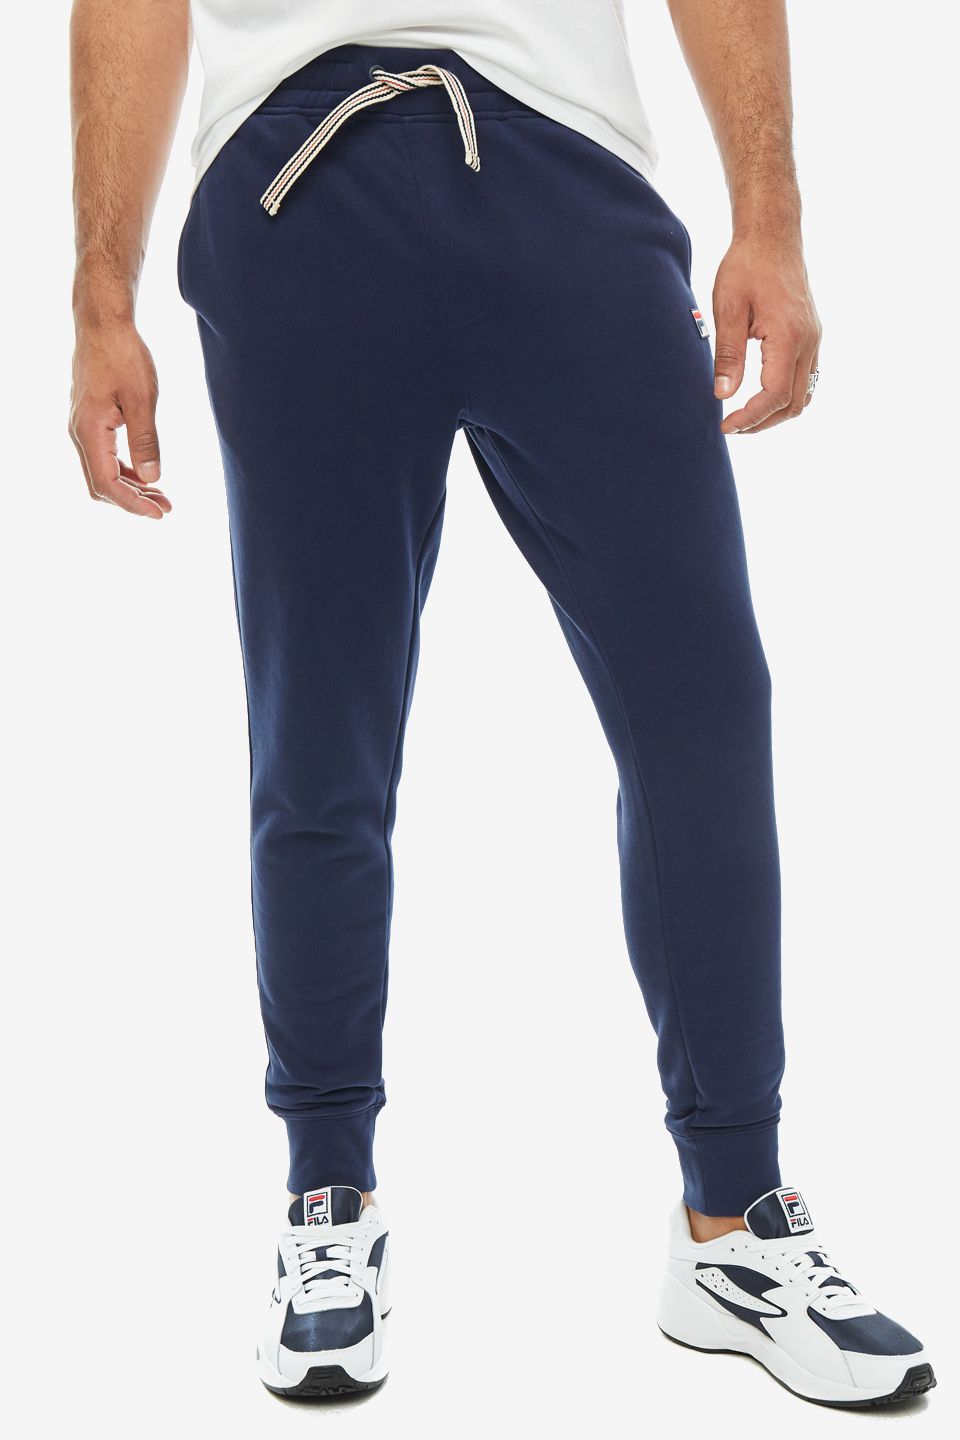 Спортивные брюки мужские FILA LM171YB4-410 синие 2XL - купить в Москве,цены на Мегамаркет